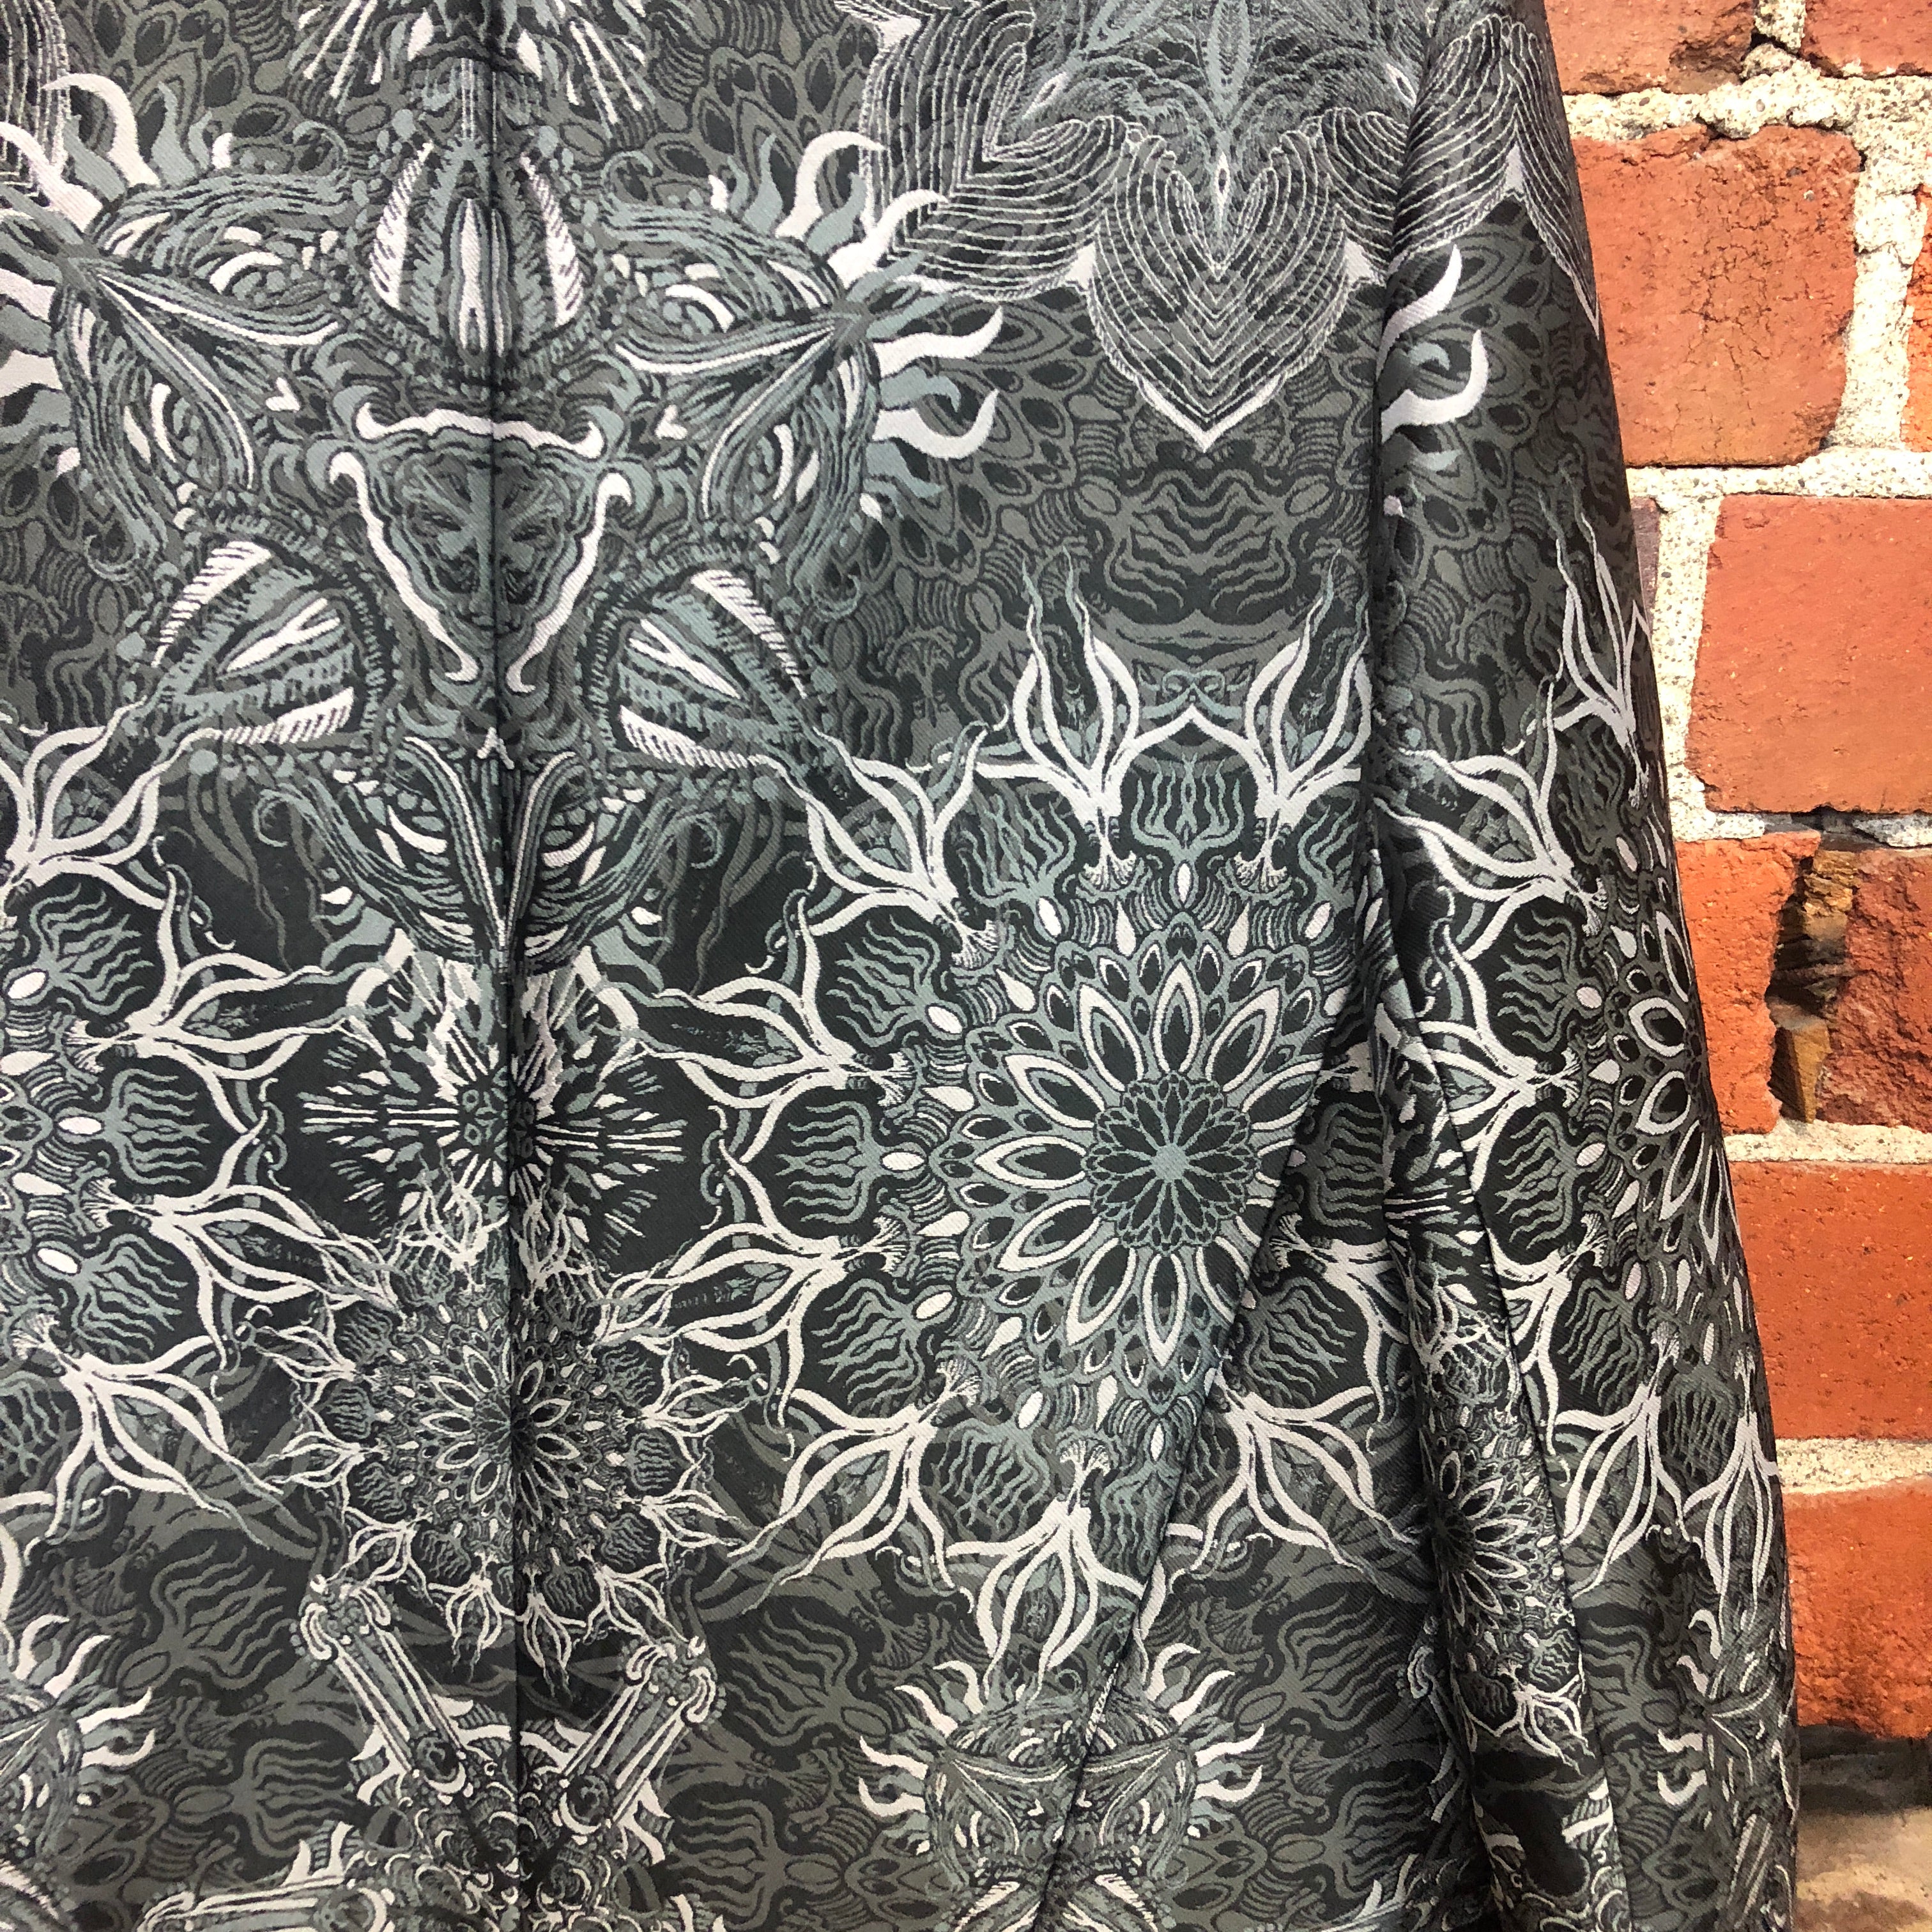 HELMUT LANG patterned zip front jacket